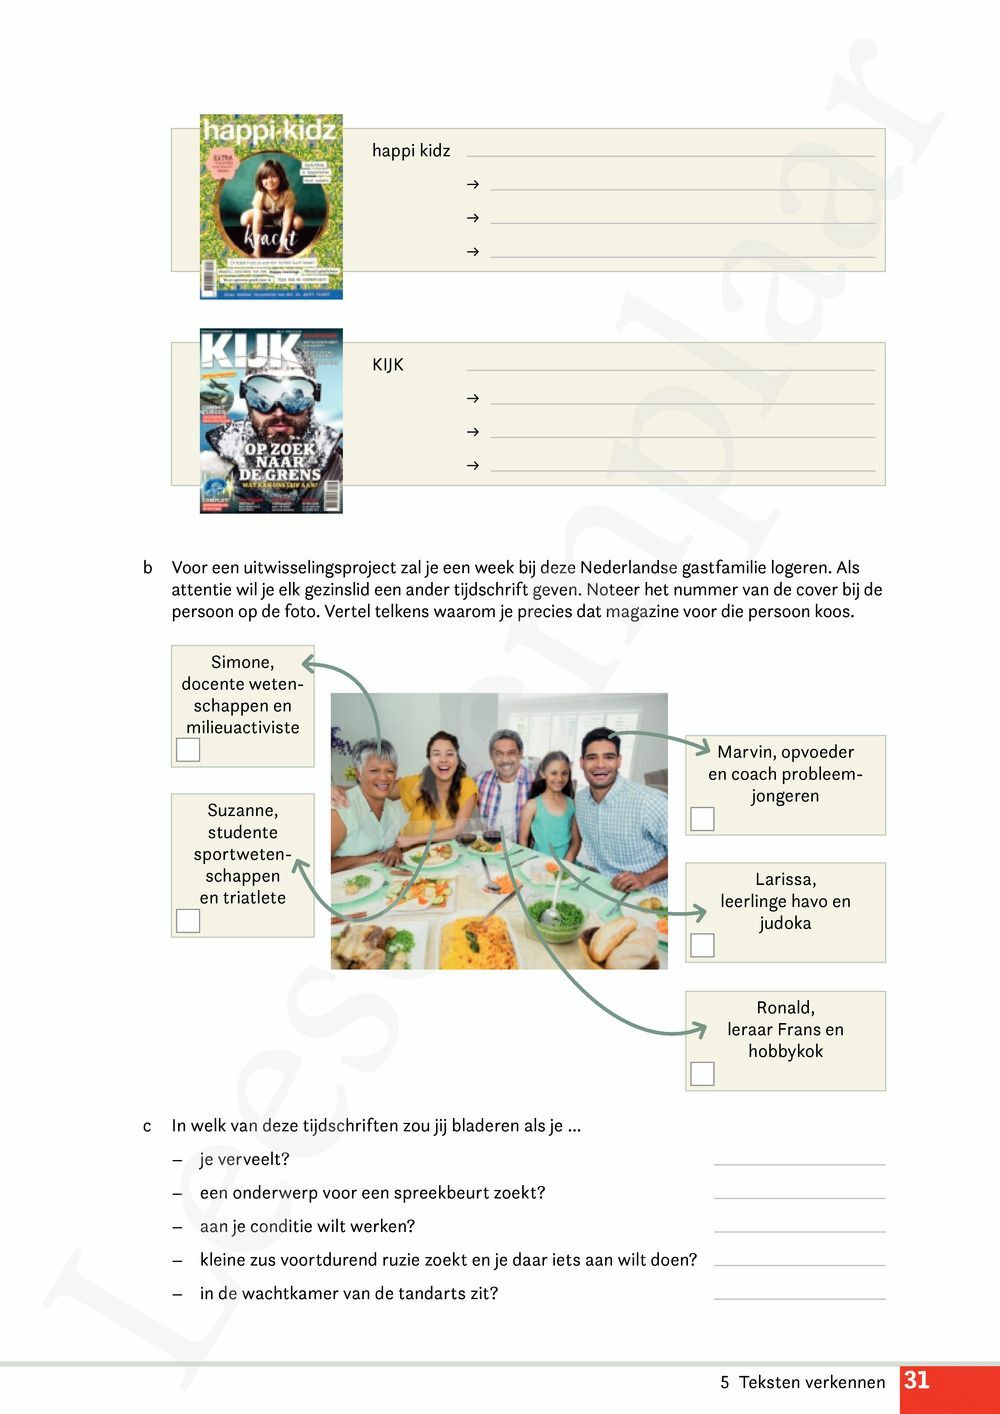 Preview: Campus Nederlands 1 Werkboek (editie 2024) (incl. Pelckmans Portaal)